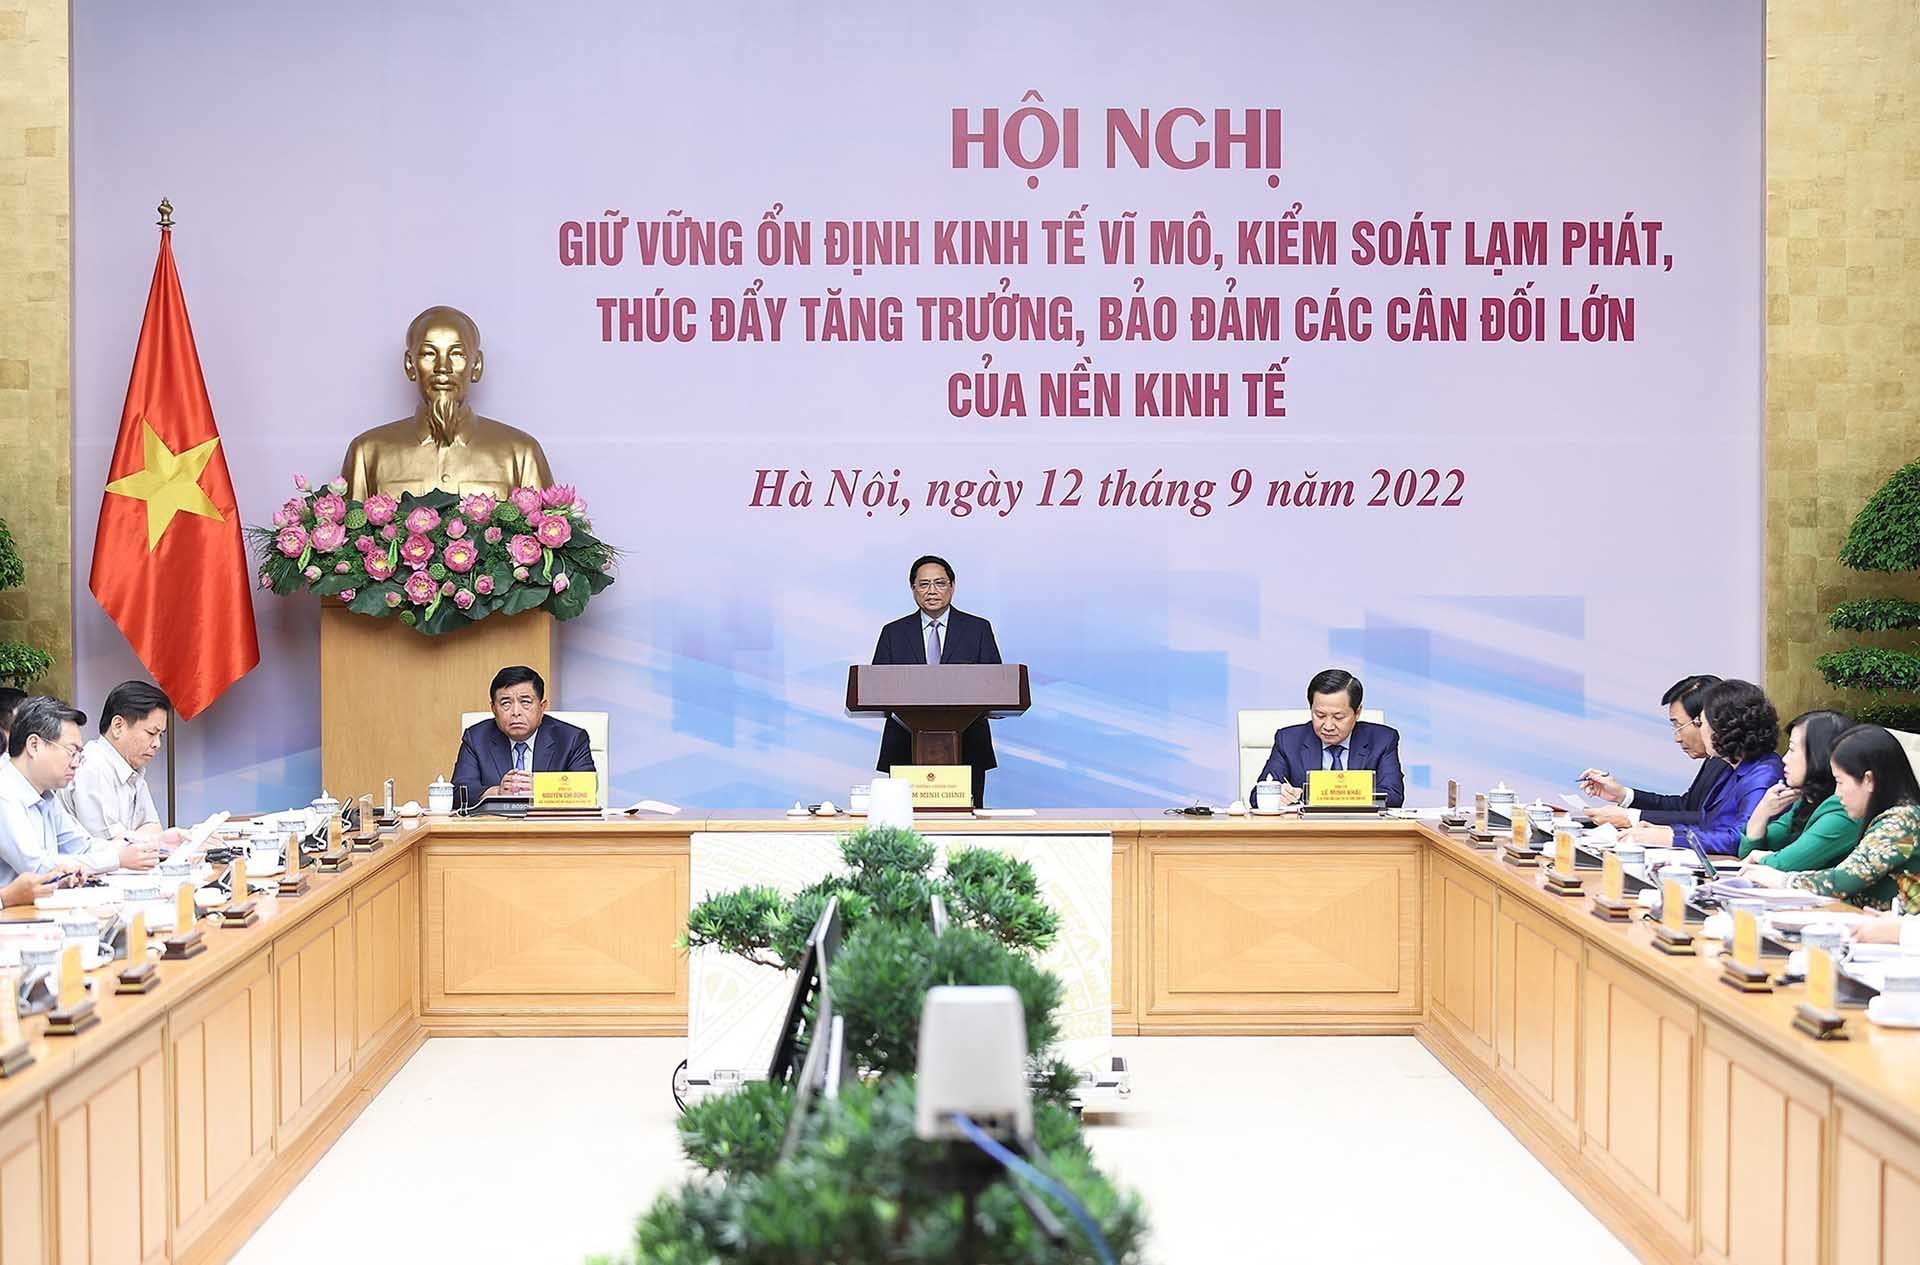 Kinh tế vĩ mô: Đón năm 2024, kinh tế vĩ mô của Việt Nam tiếp tục phát triển ổn định. Những cơ hội và thách thức mới sẵn sàng chờ đón doanh nghiệp. Đừng bỏ lỡ cơ hội thành công với hình ảnh đẹp về kinh tế vĩ mô đầy màu sắc!